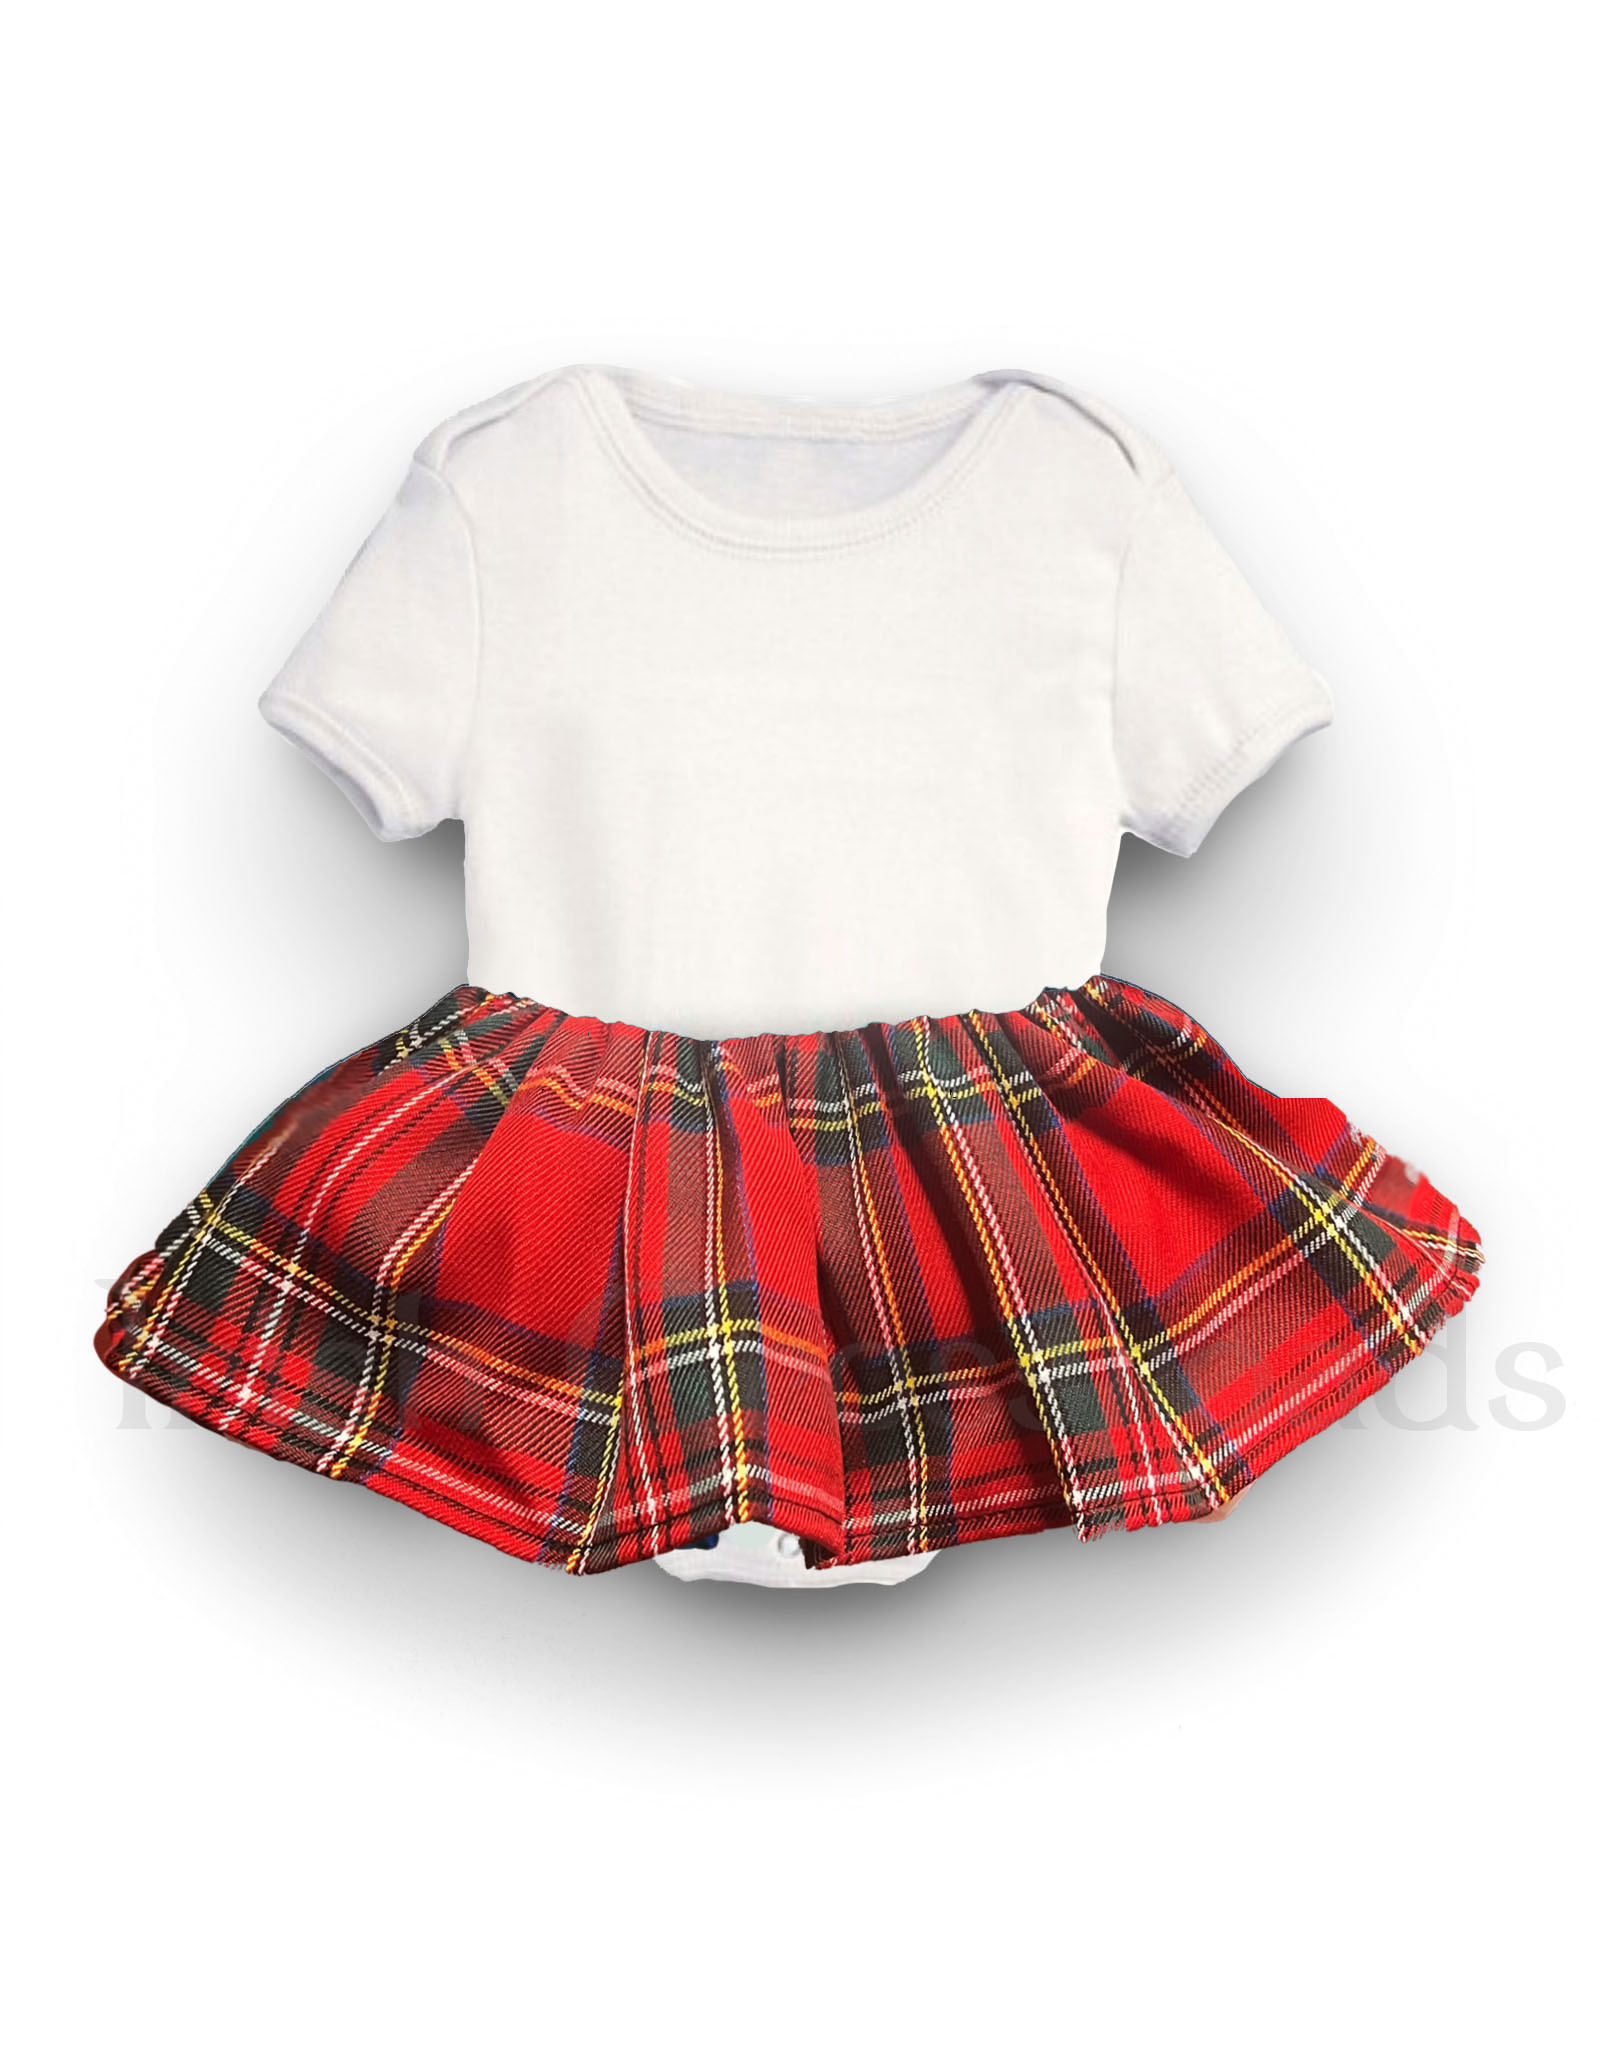 BABY CLOTHES TARTAN TOTS ONESIE - Royal Stewart